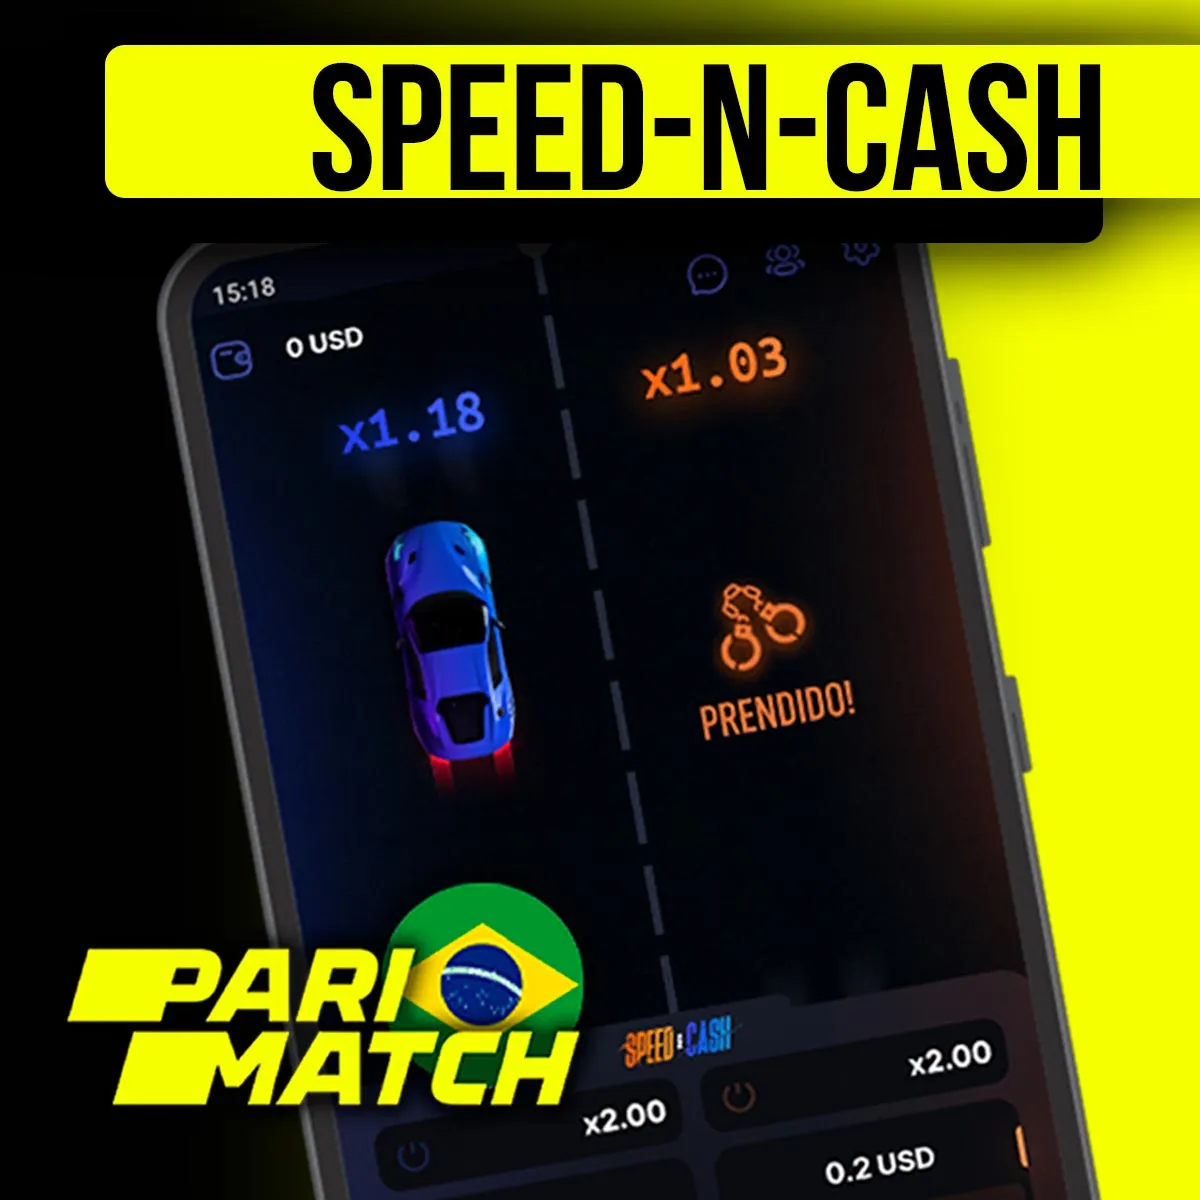 Popular jogo de cassino Speed-n-Cash na casa de apostas Parimatch no Brasil